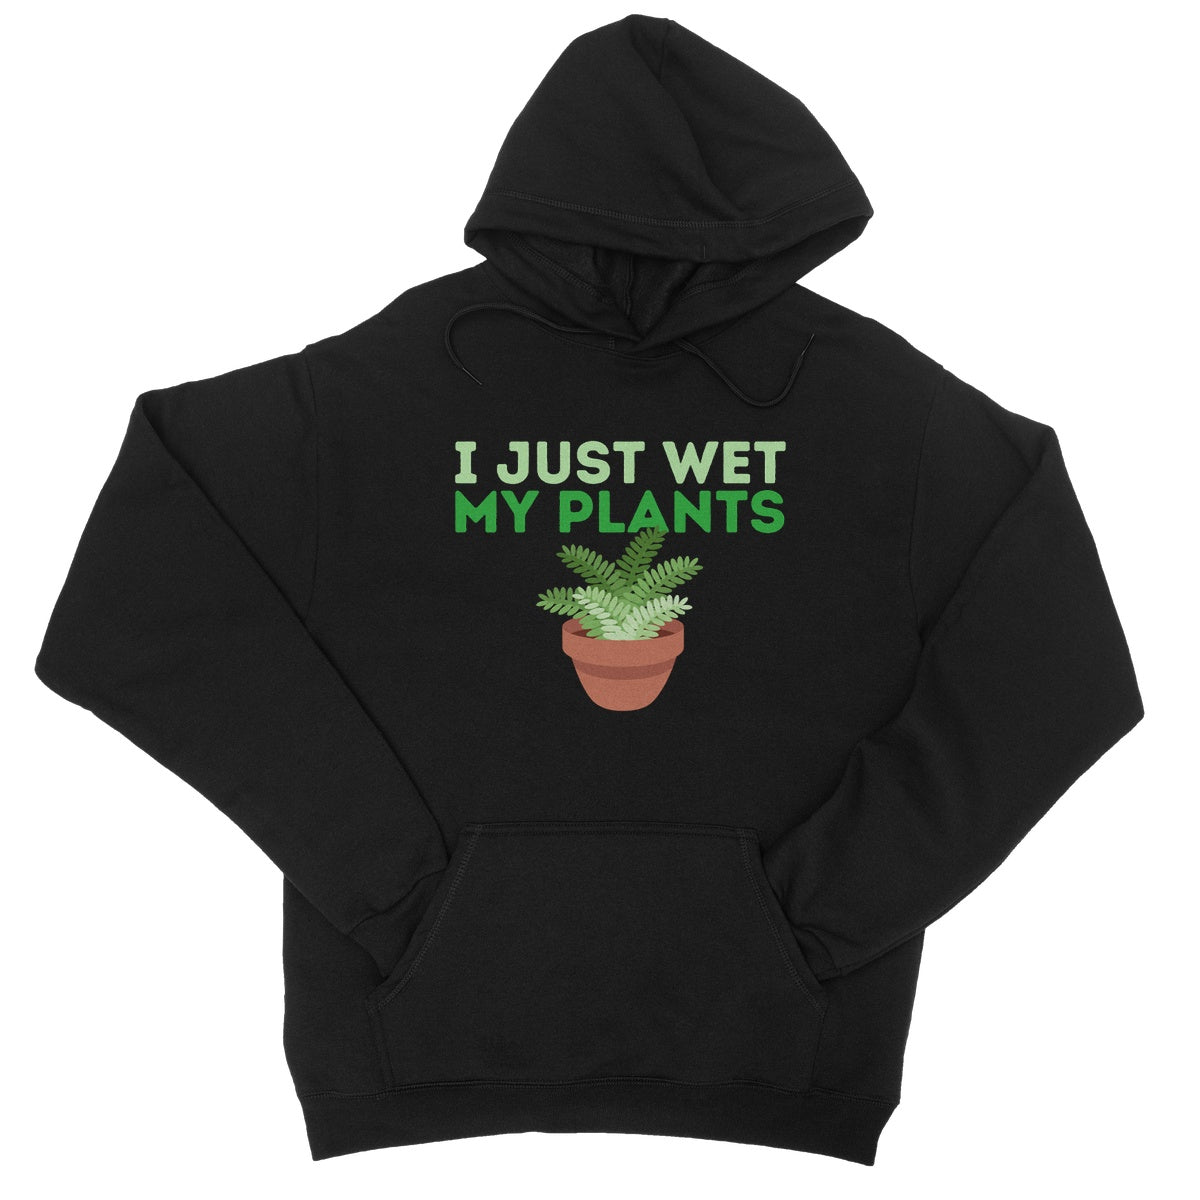 I just wet my plants hoodie black